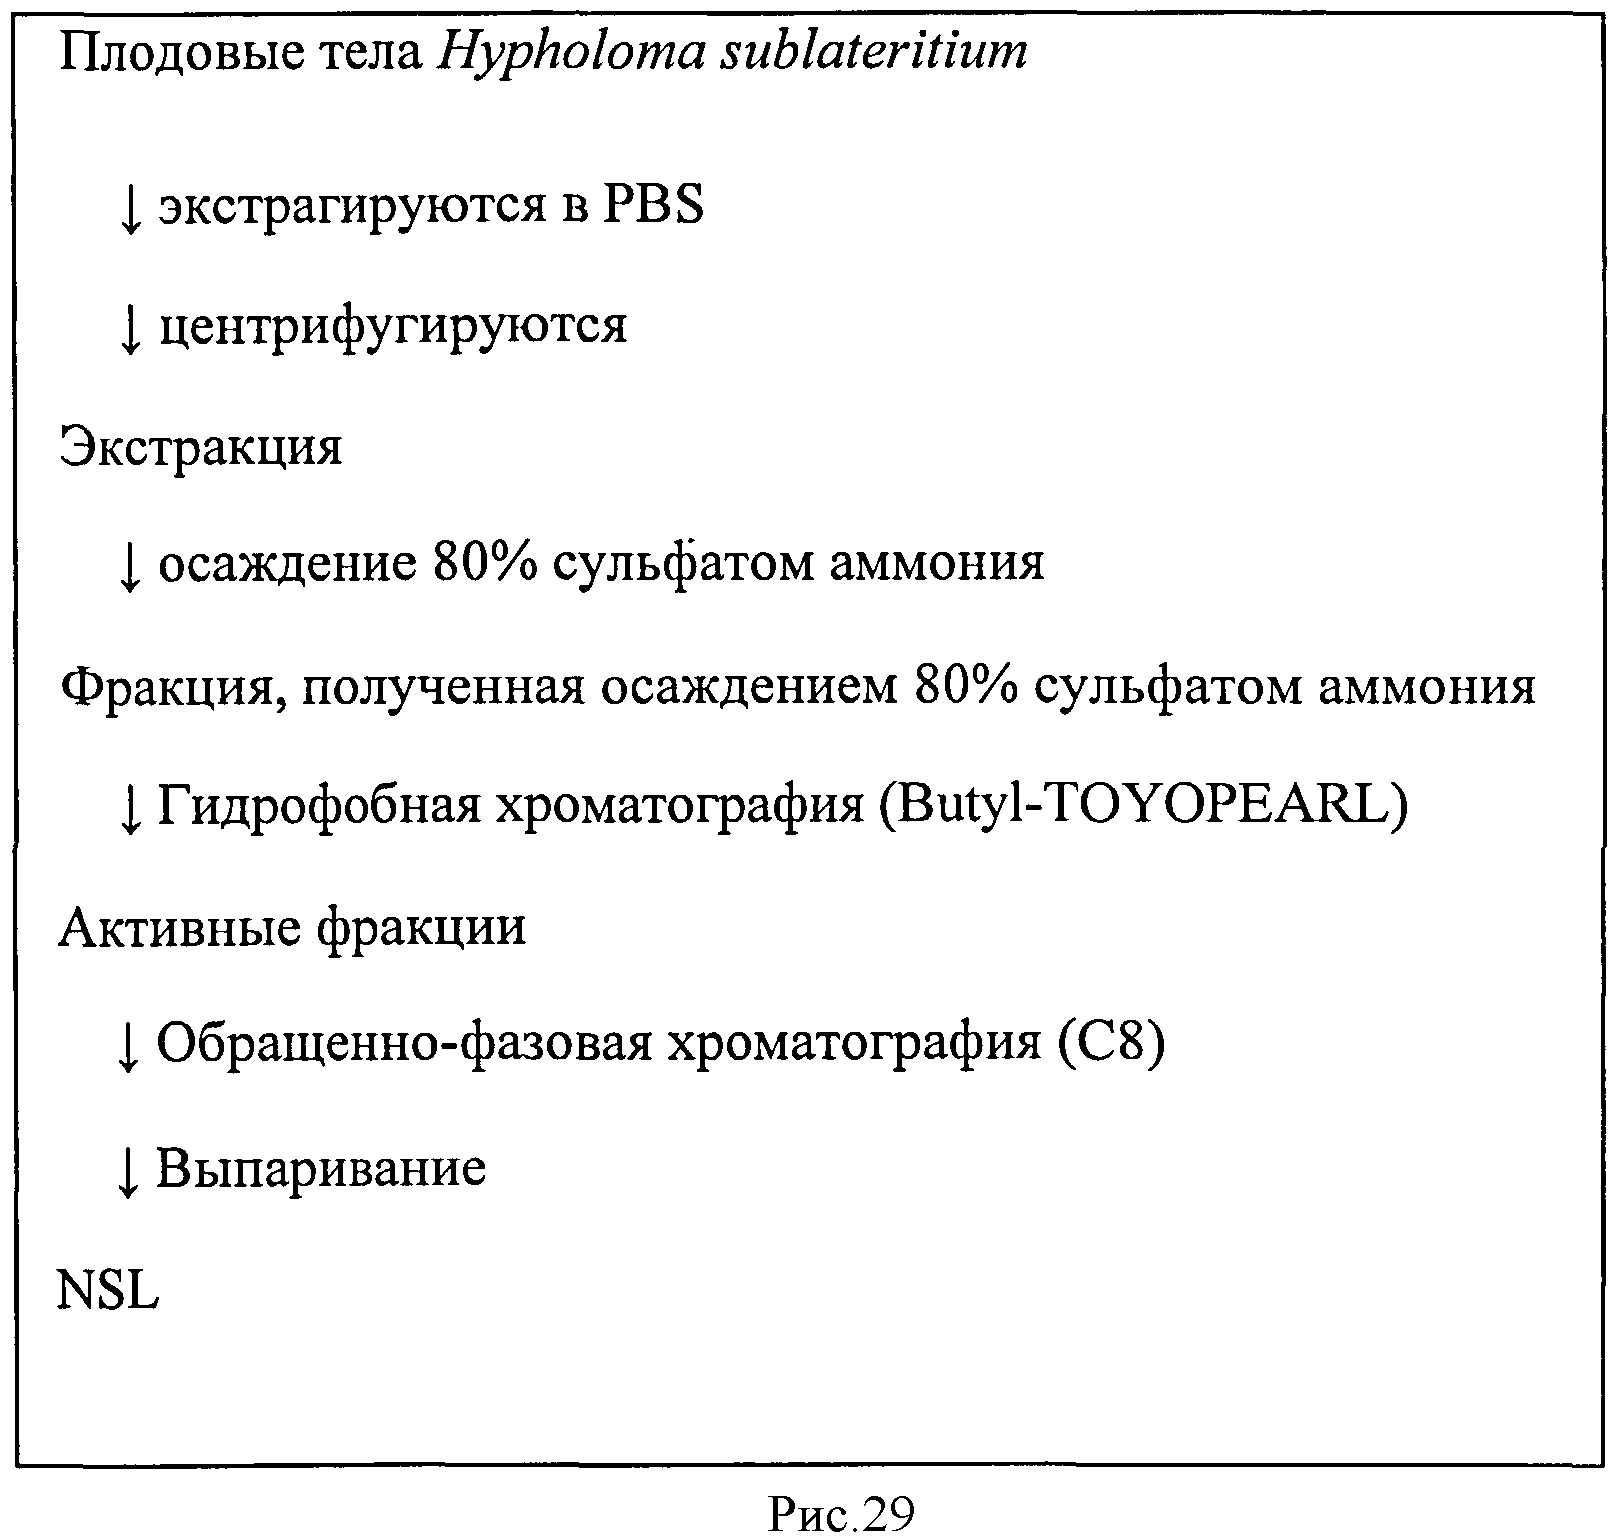 L-ФУКОЗА α1→6 СПЕЦИФИЧНЫЙ ЛЕКТИН